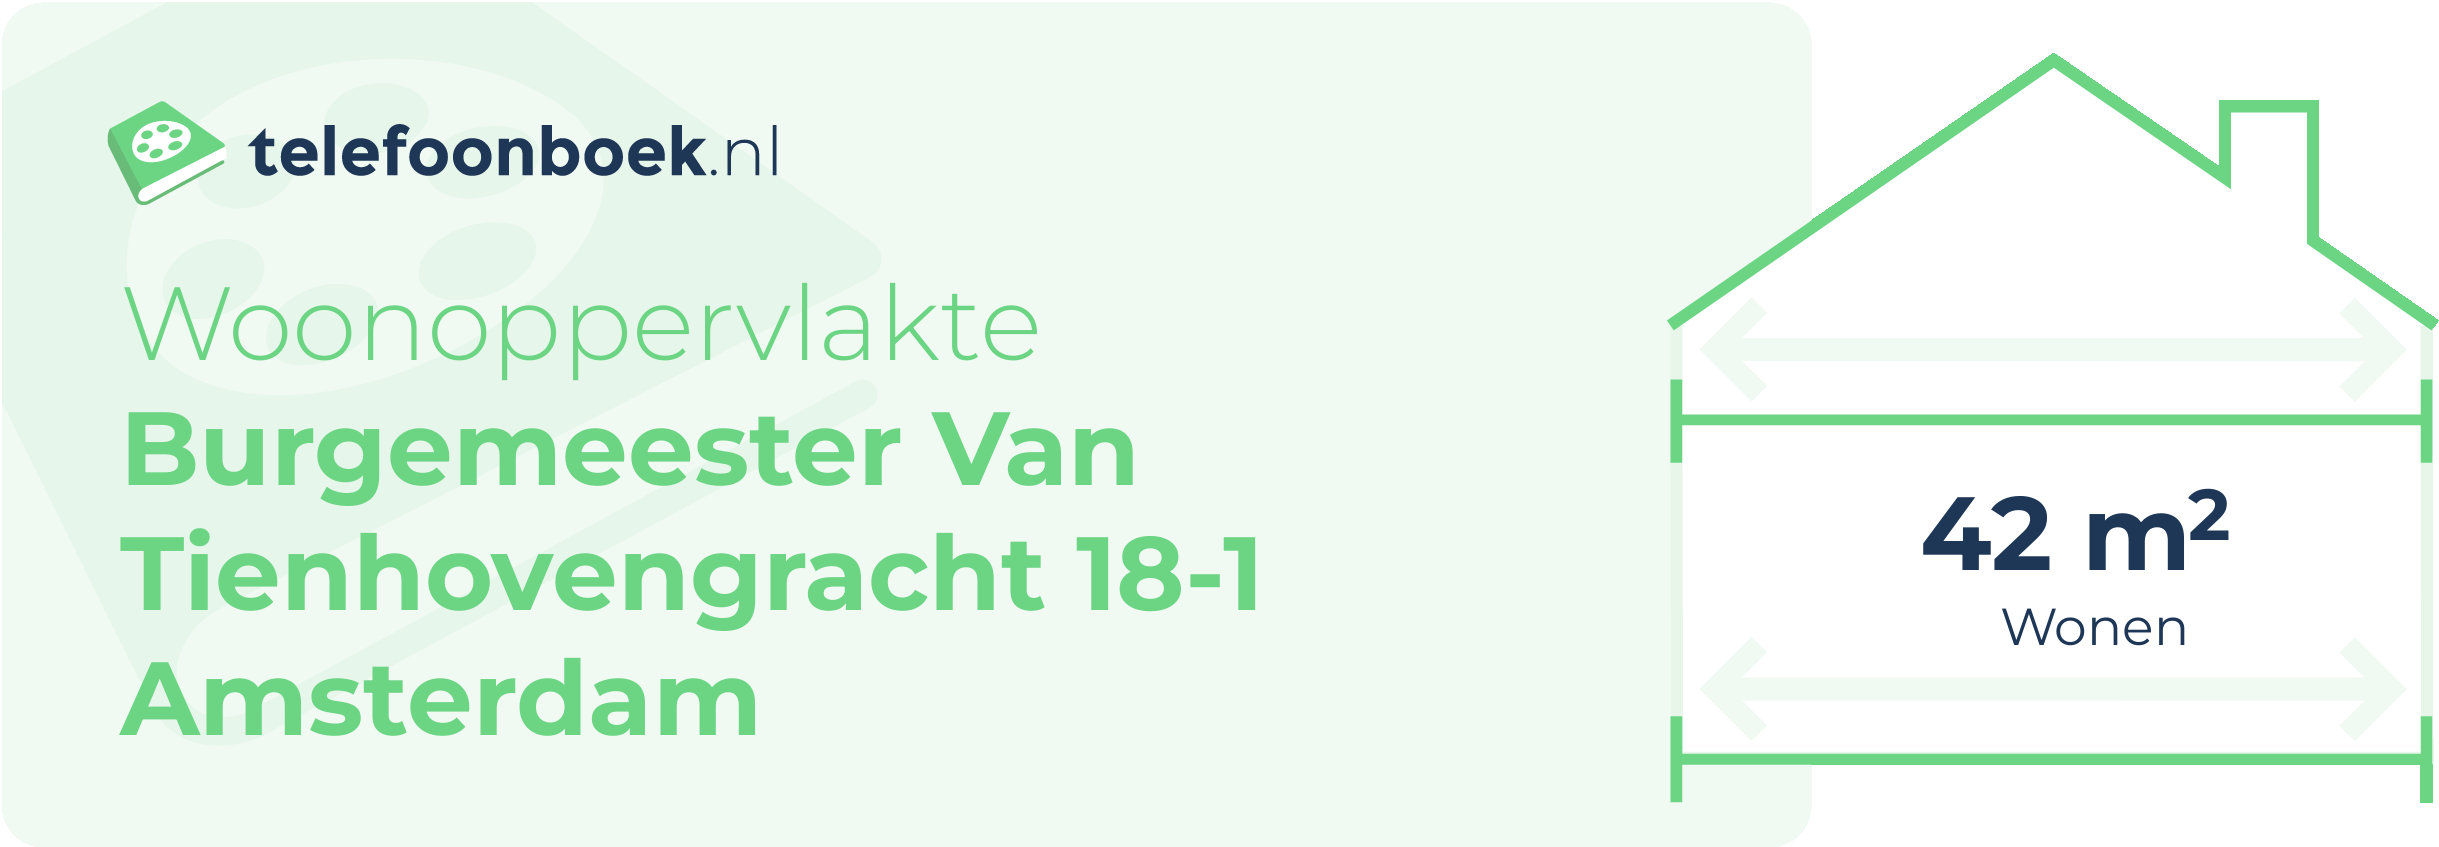 Woonoppervlakte Burgemeester Van Tienhovengracht 18-1 Amsterdam